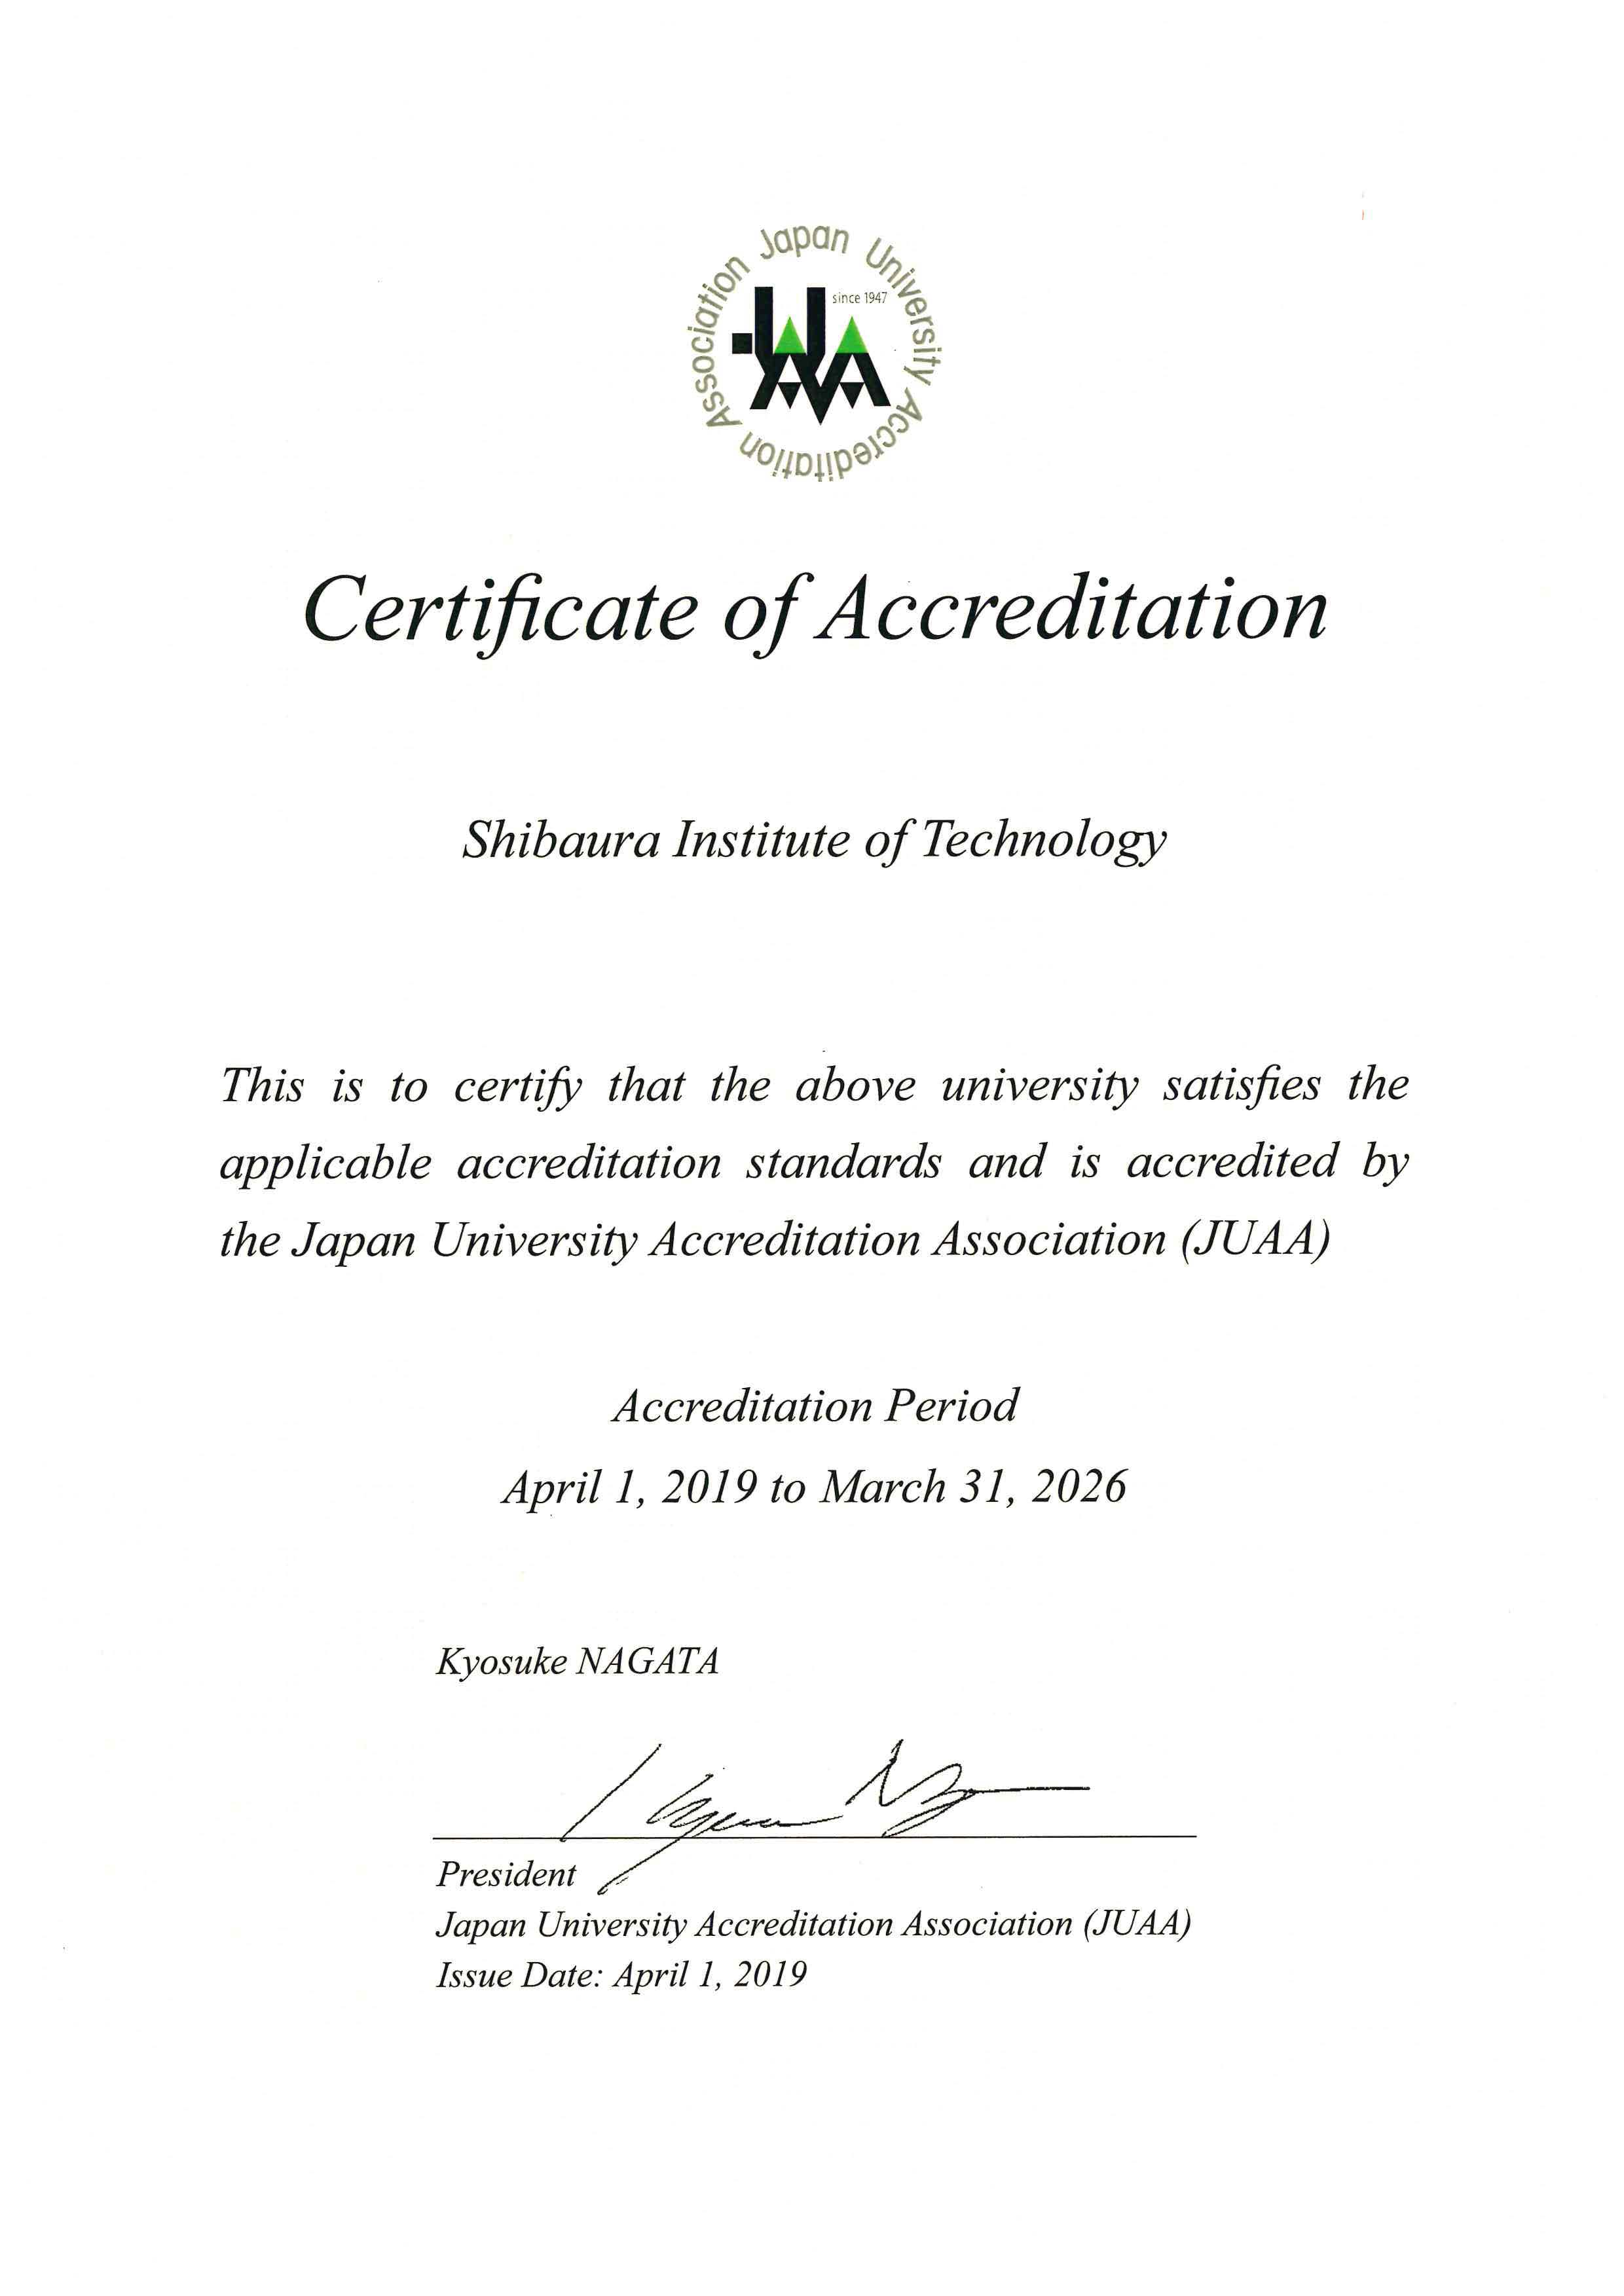 accreditation2018en